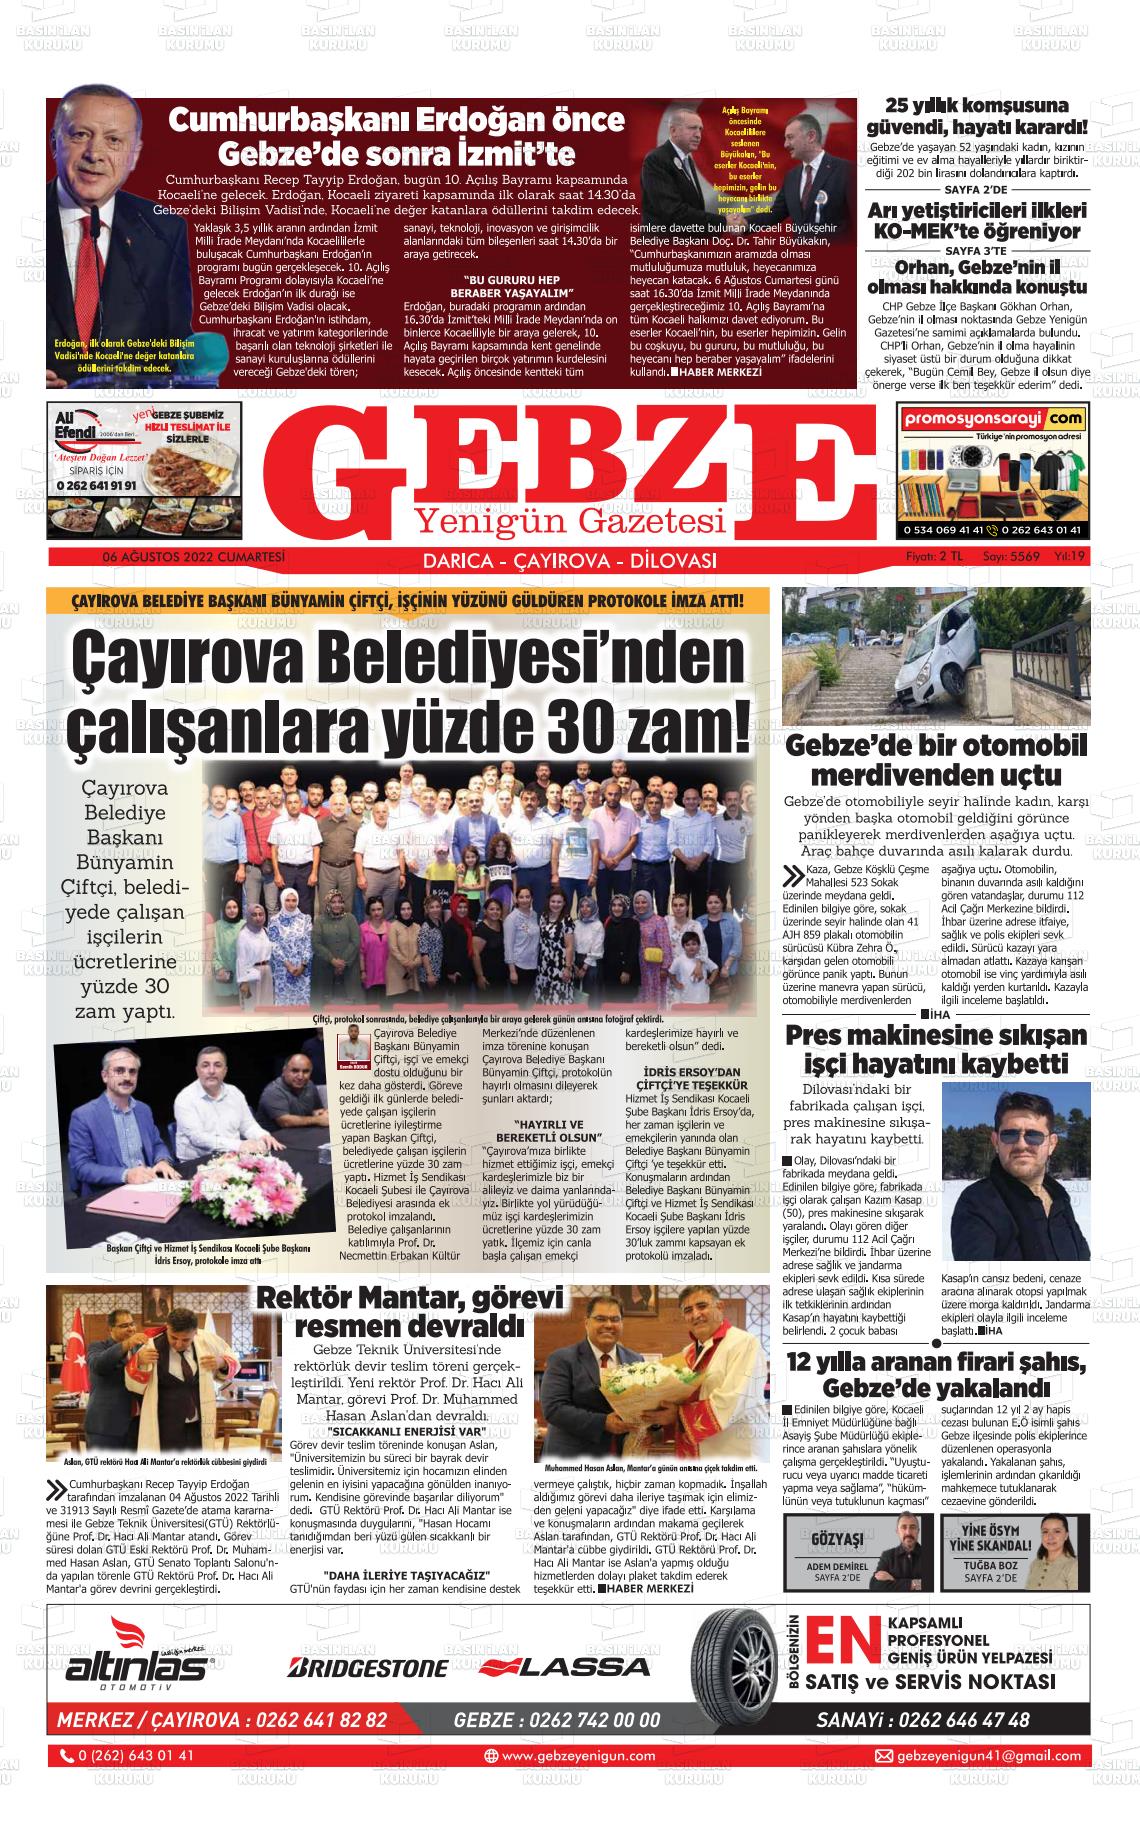 06 Ağustos 2022 Gebze Yenigün Gazete Manşeti